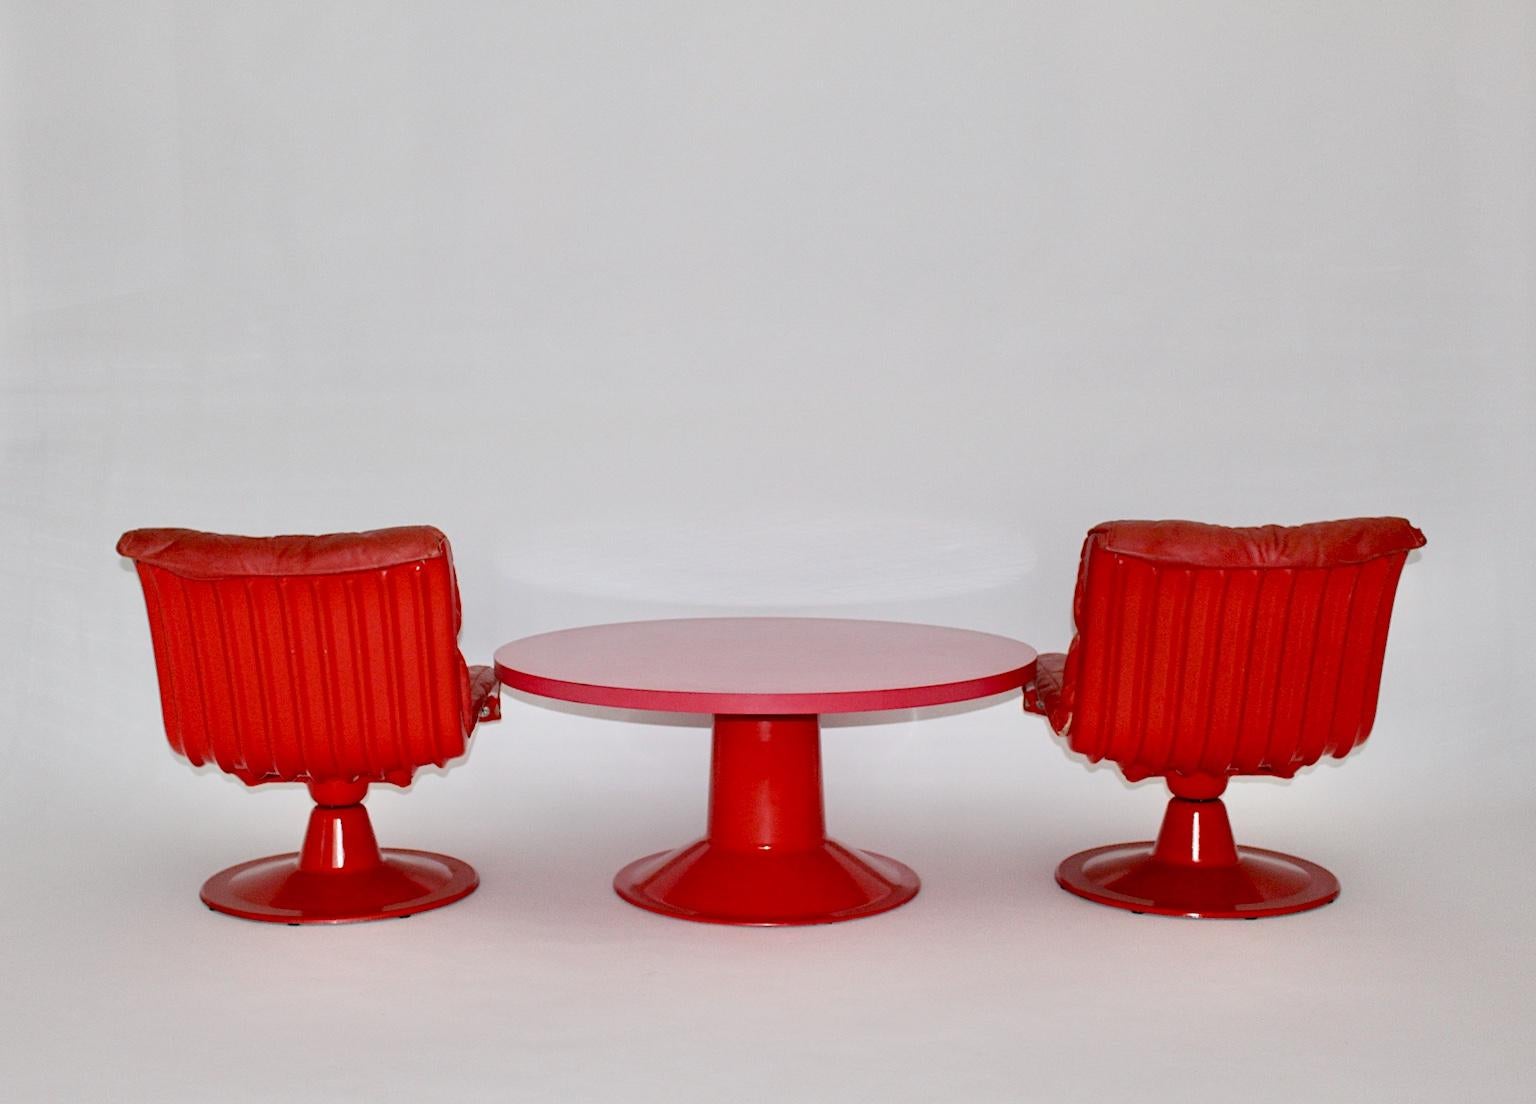 Rotes Vintage-Sesselpaar mit dem Namen Saturn, entworfen von Yrjö Kukkapuro, Finnland, 1960er Jahre, mit einem runden, rosafarbenen Sofatisch, ebenfalls entworfen von Yrjö Kukkapuro, 1960er Jahre.
Die seltenen, drehbaren und bequemen Lounge-Sessel